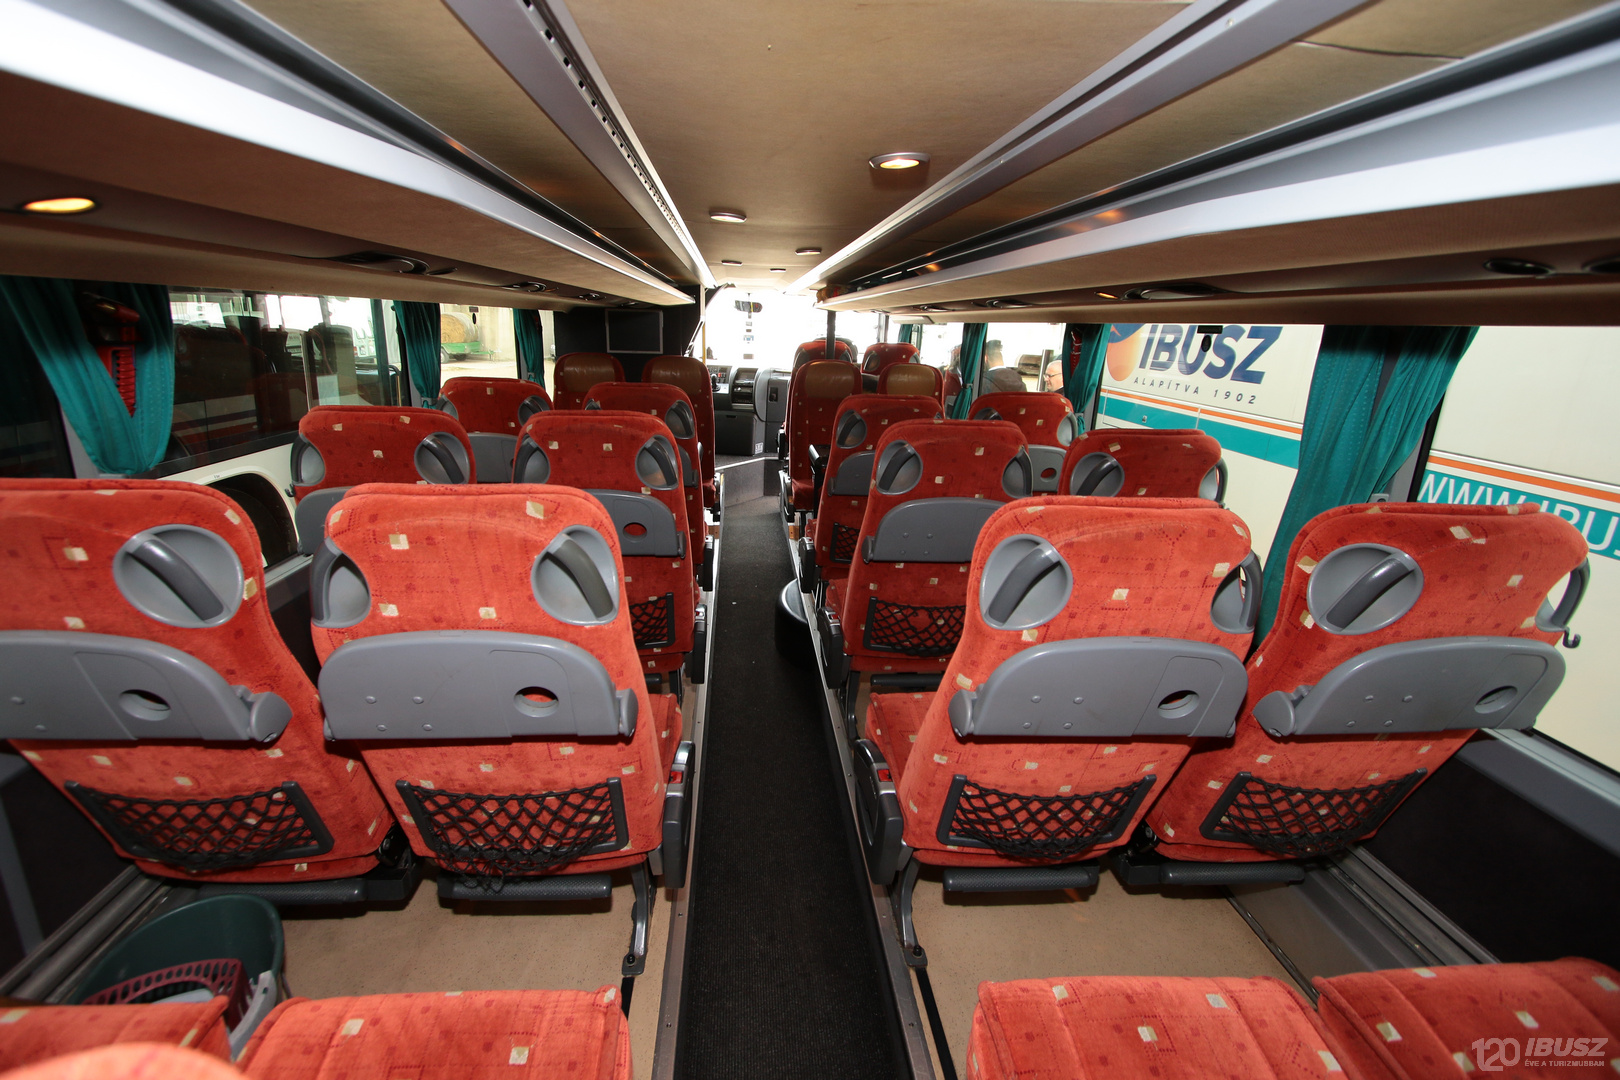 Az IBUSZ által szervezett Halkidiki expressz 2023 buszjárat asztallal ellátott üléseinél az utazás közben kényelmesen és biztonságosan elkölthetjük étkezéseinket.